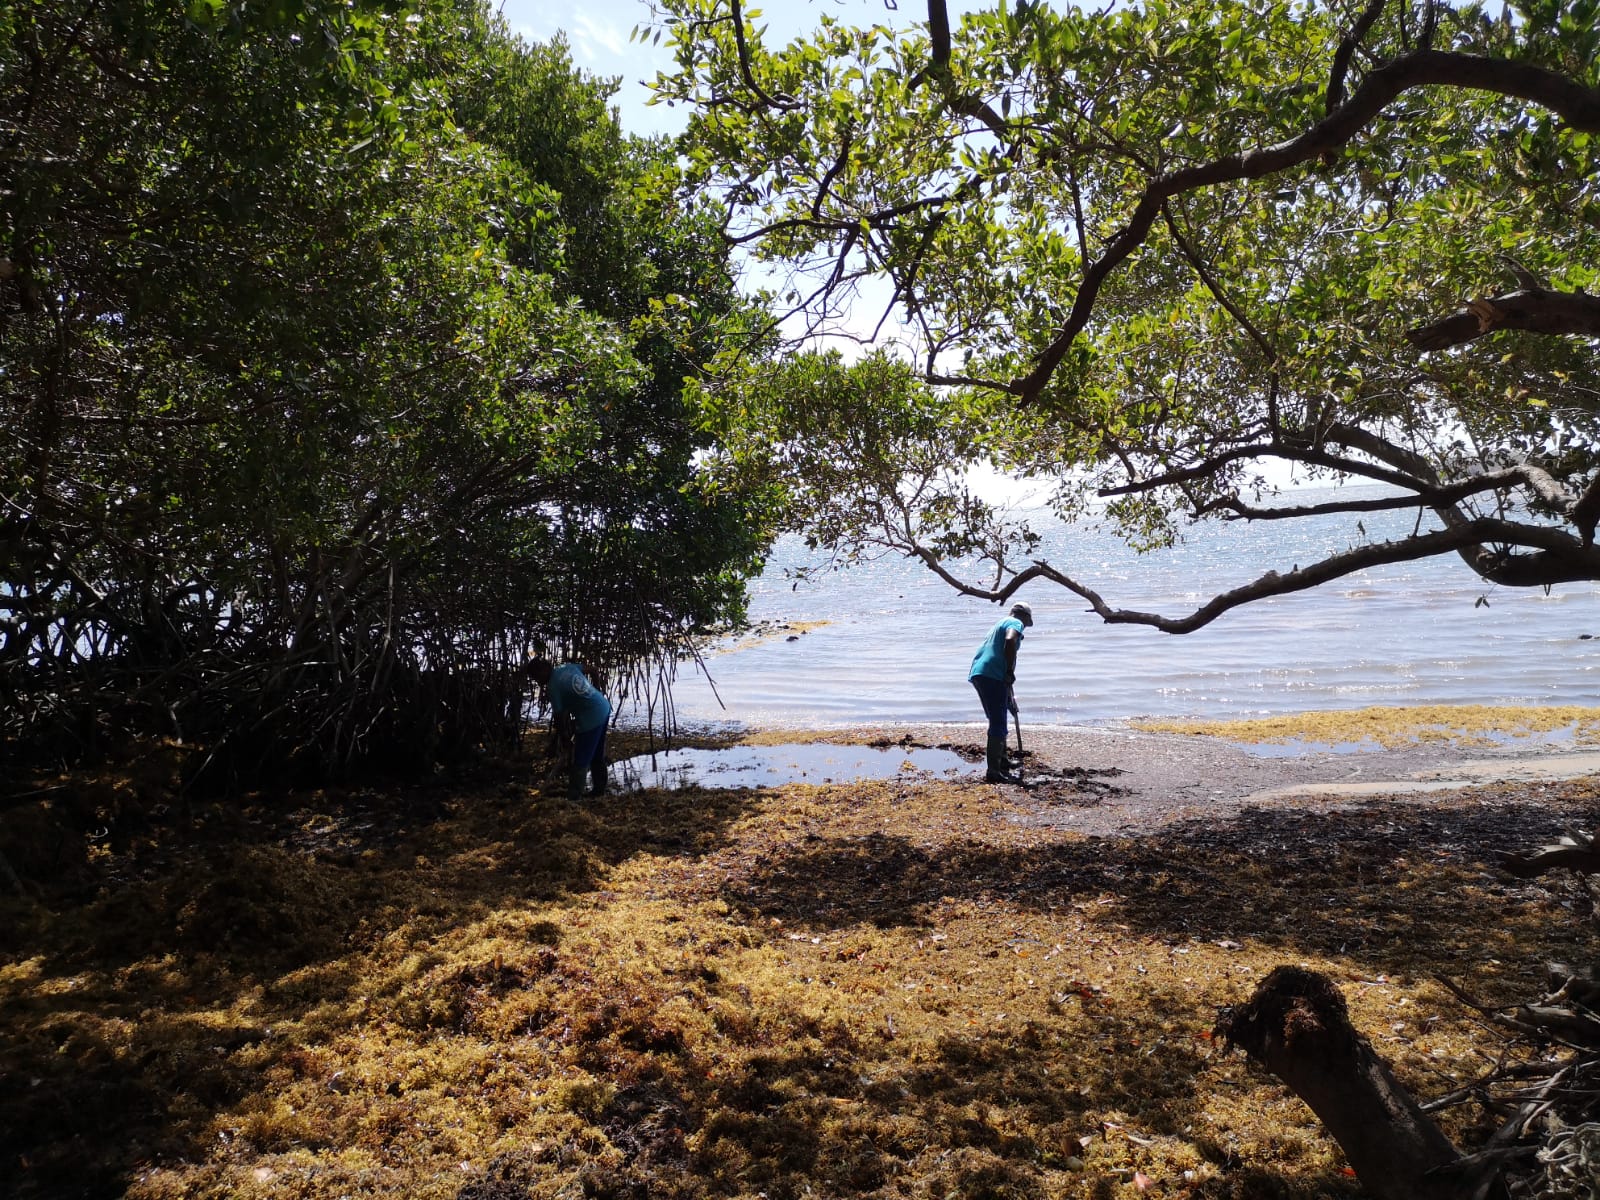     Trinité : les sargasses sont de retour sur le littoral 

